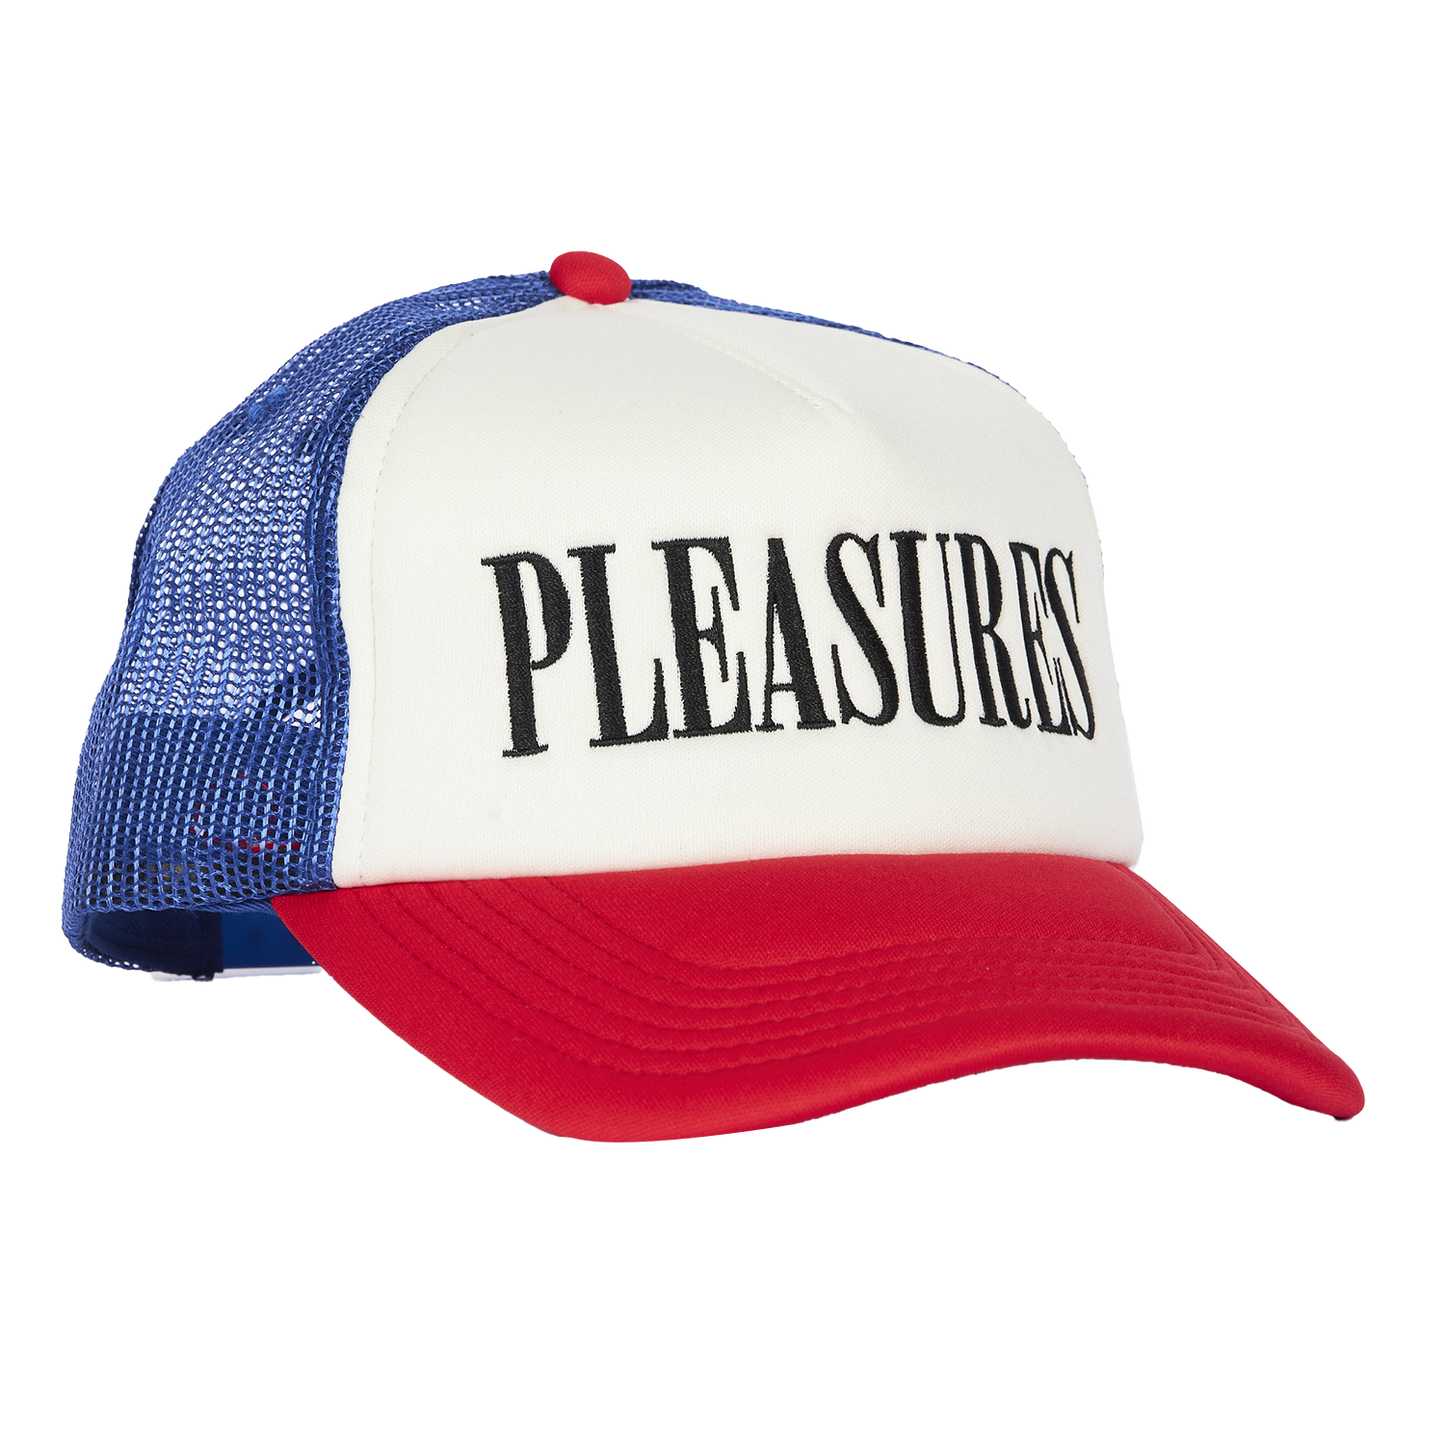 PLEASURES CAP - deviceone